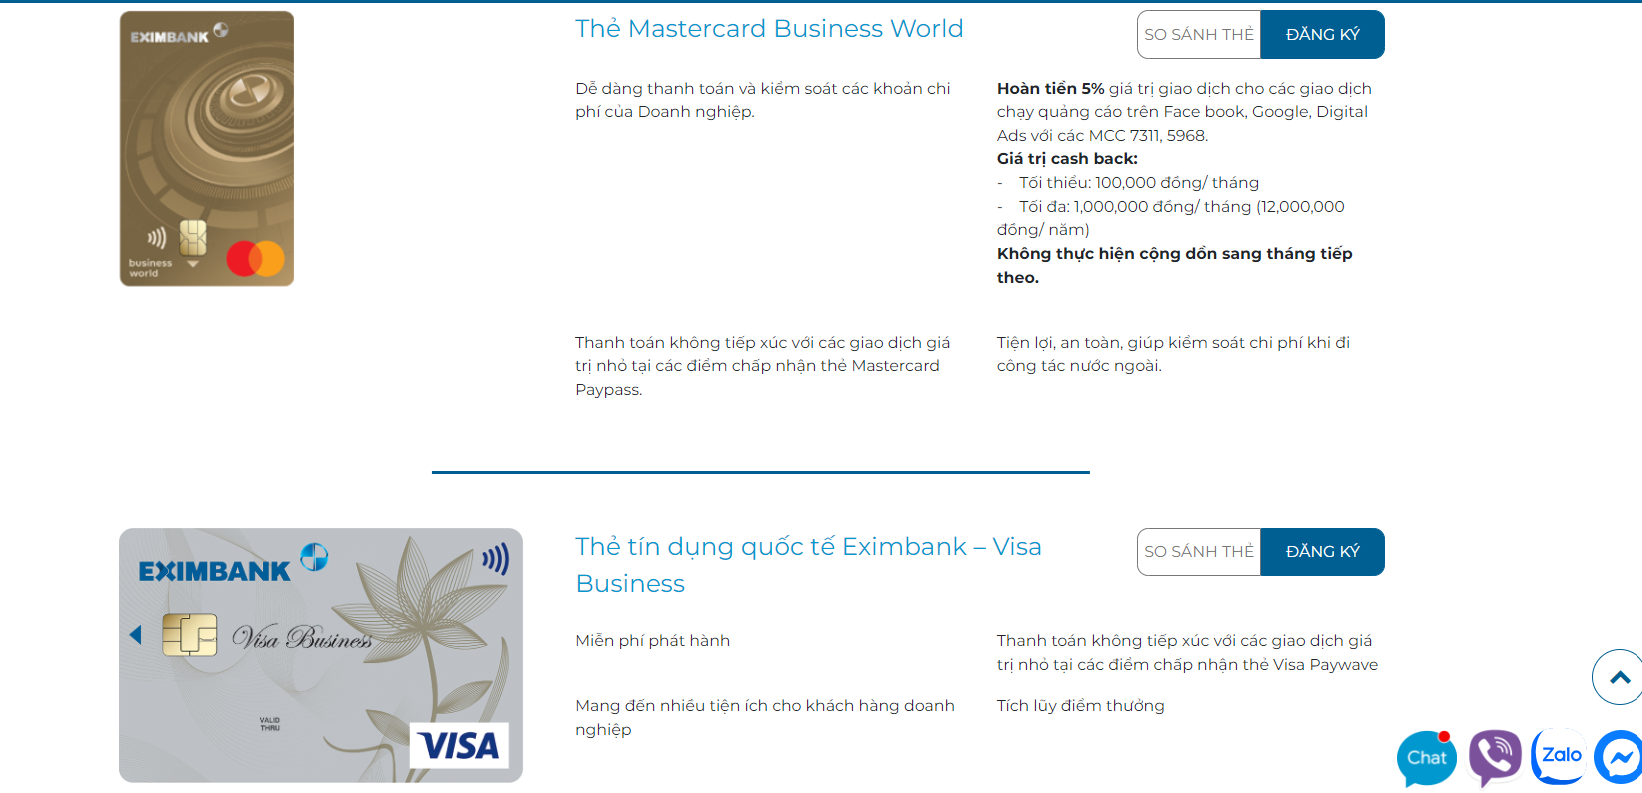 Eximbank đang cung cấp những loại thẻ tín dụng nào?